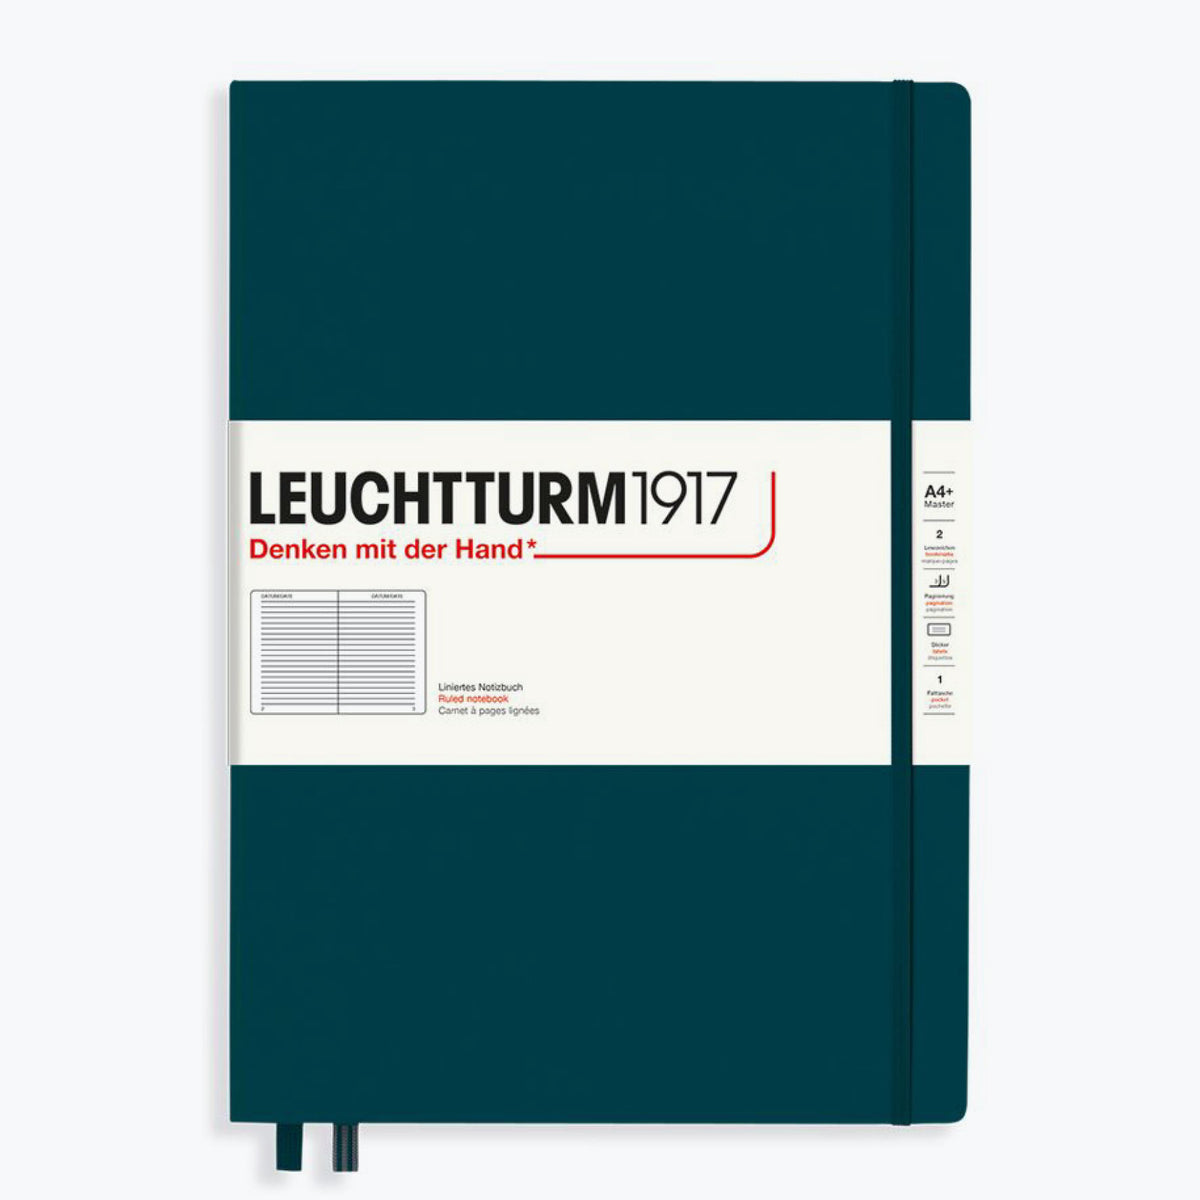 Leuchtturm1917 - Notebook - A4+ - Pacific Green <Outgoing>